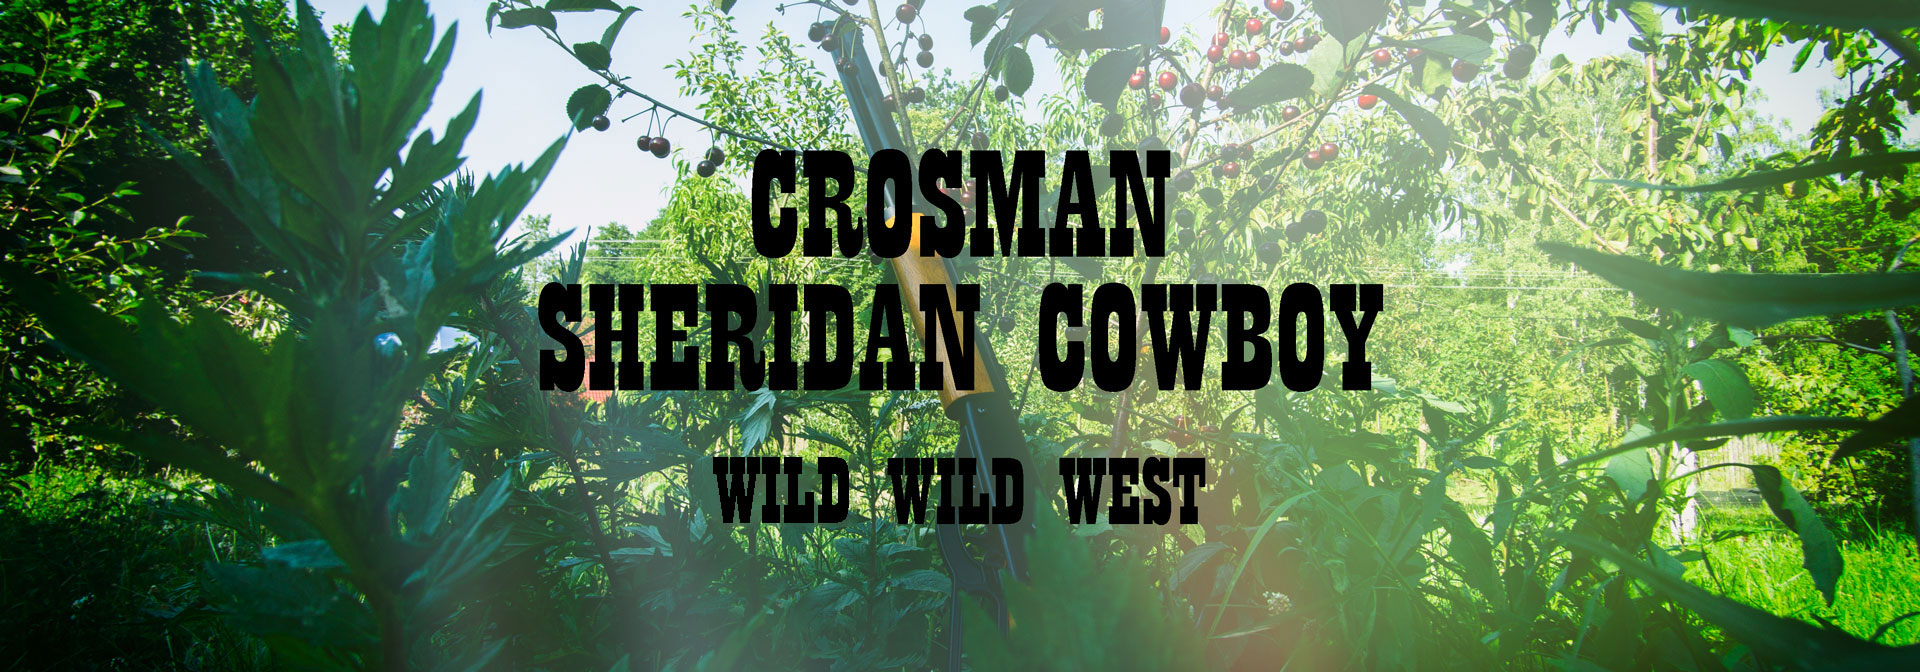 Crosman Sheridan Cowboy pierwsza wiatrówka